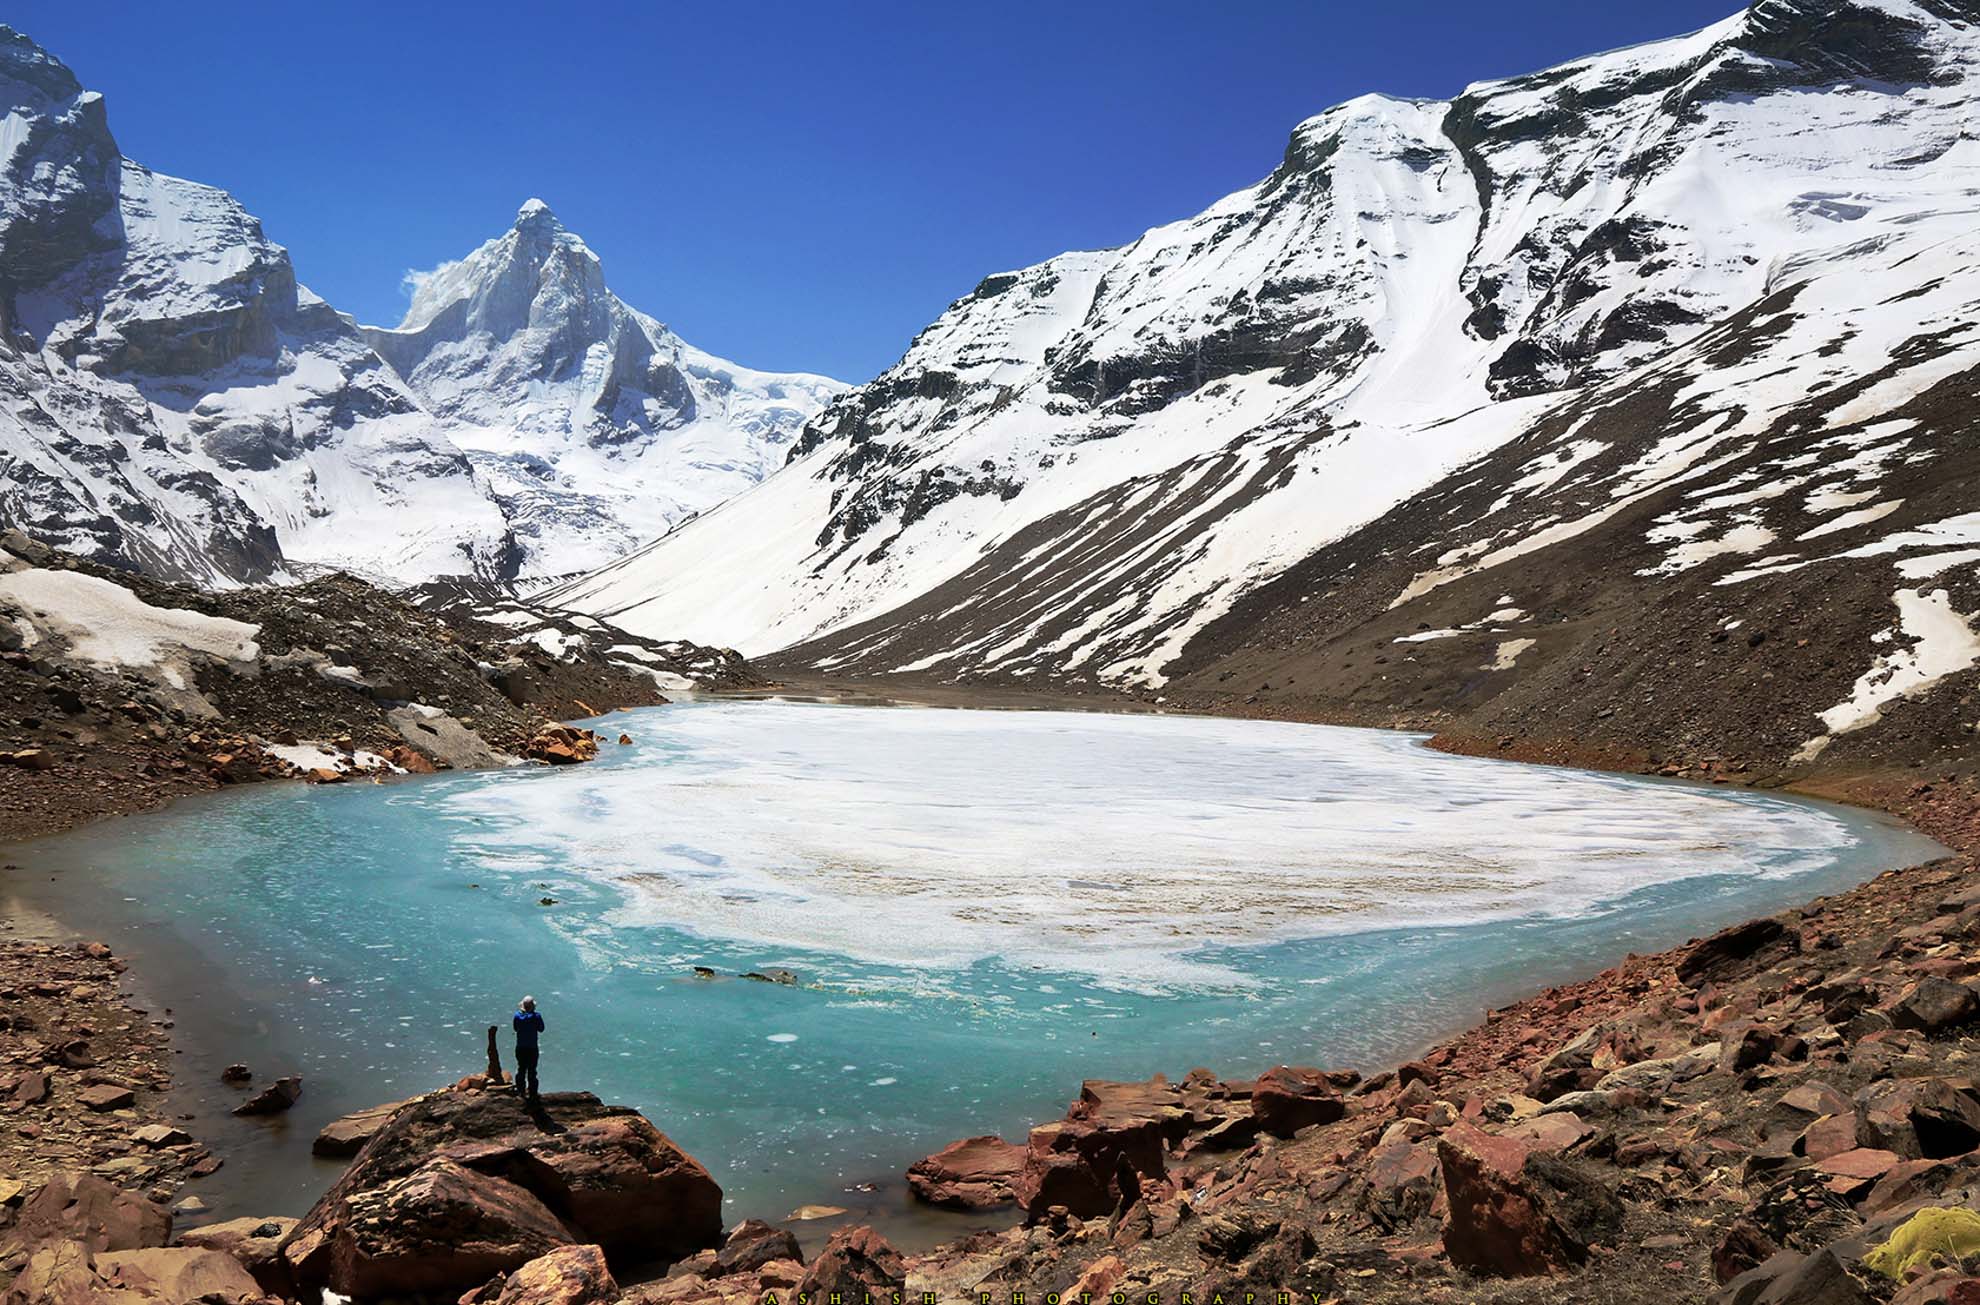 Trekking In Nepal: Treacherous Treks To Challenge Your Nerves In 2022!